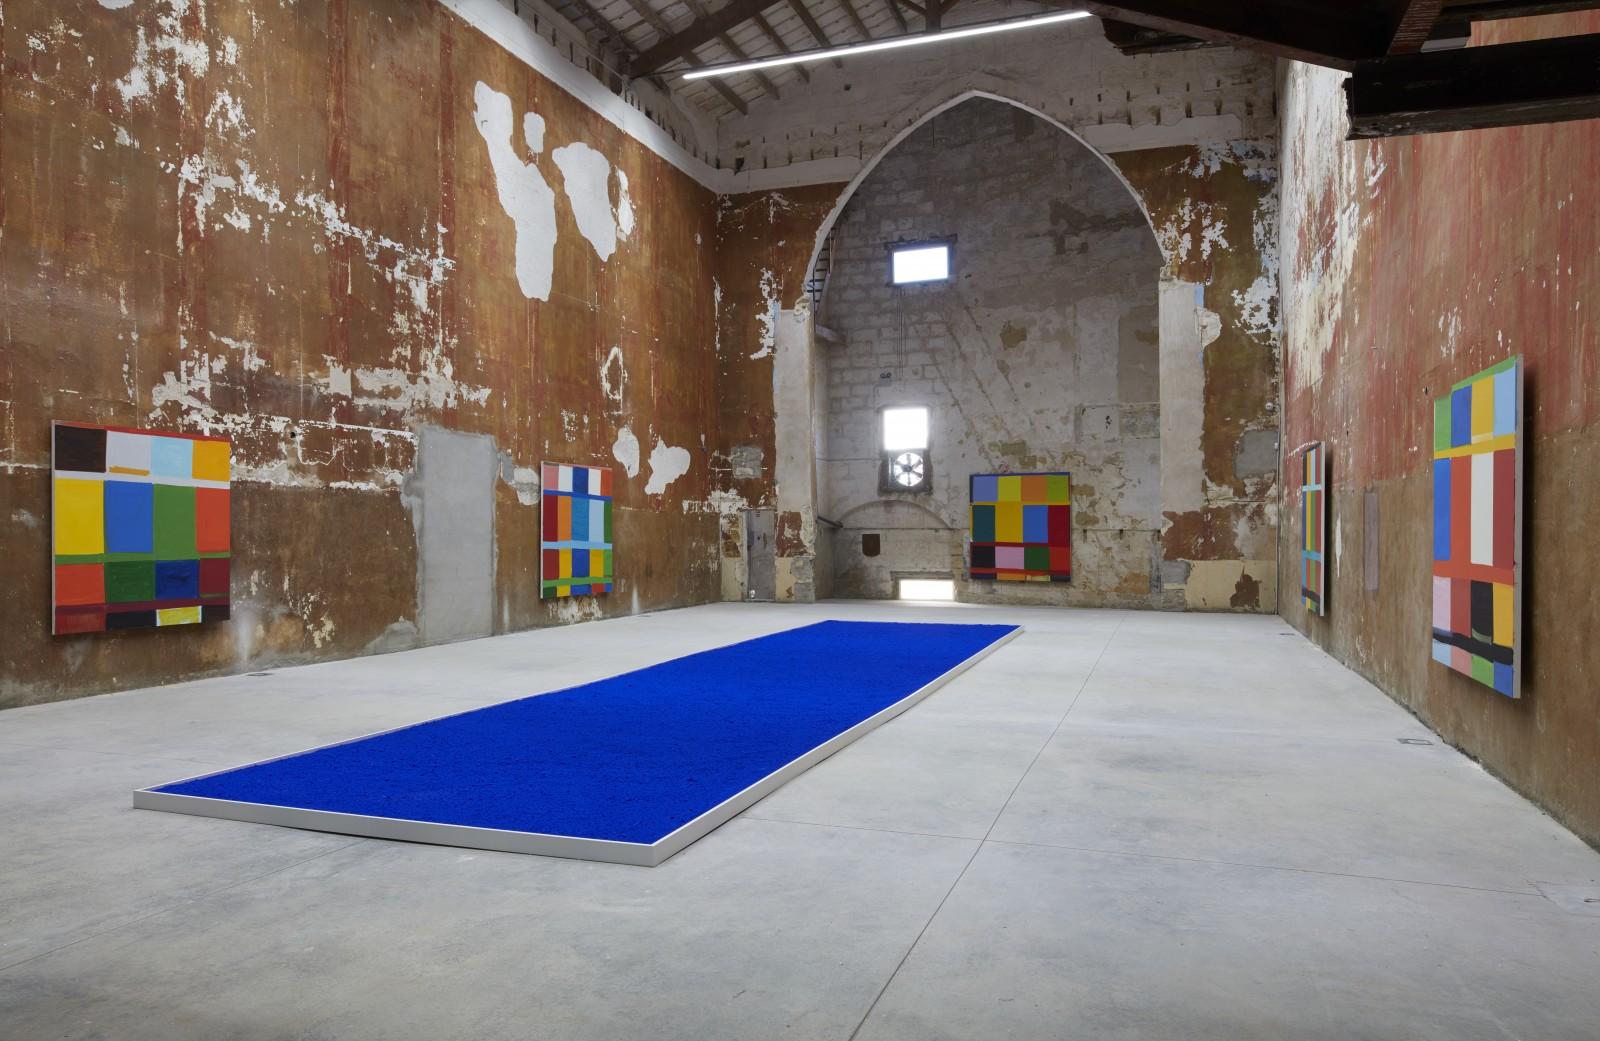 Vue de l'installation de pigment pur, Galeria Cayon, Minorque, 2019